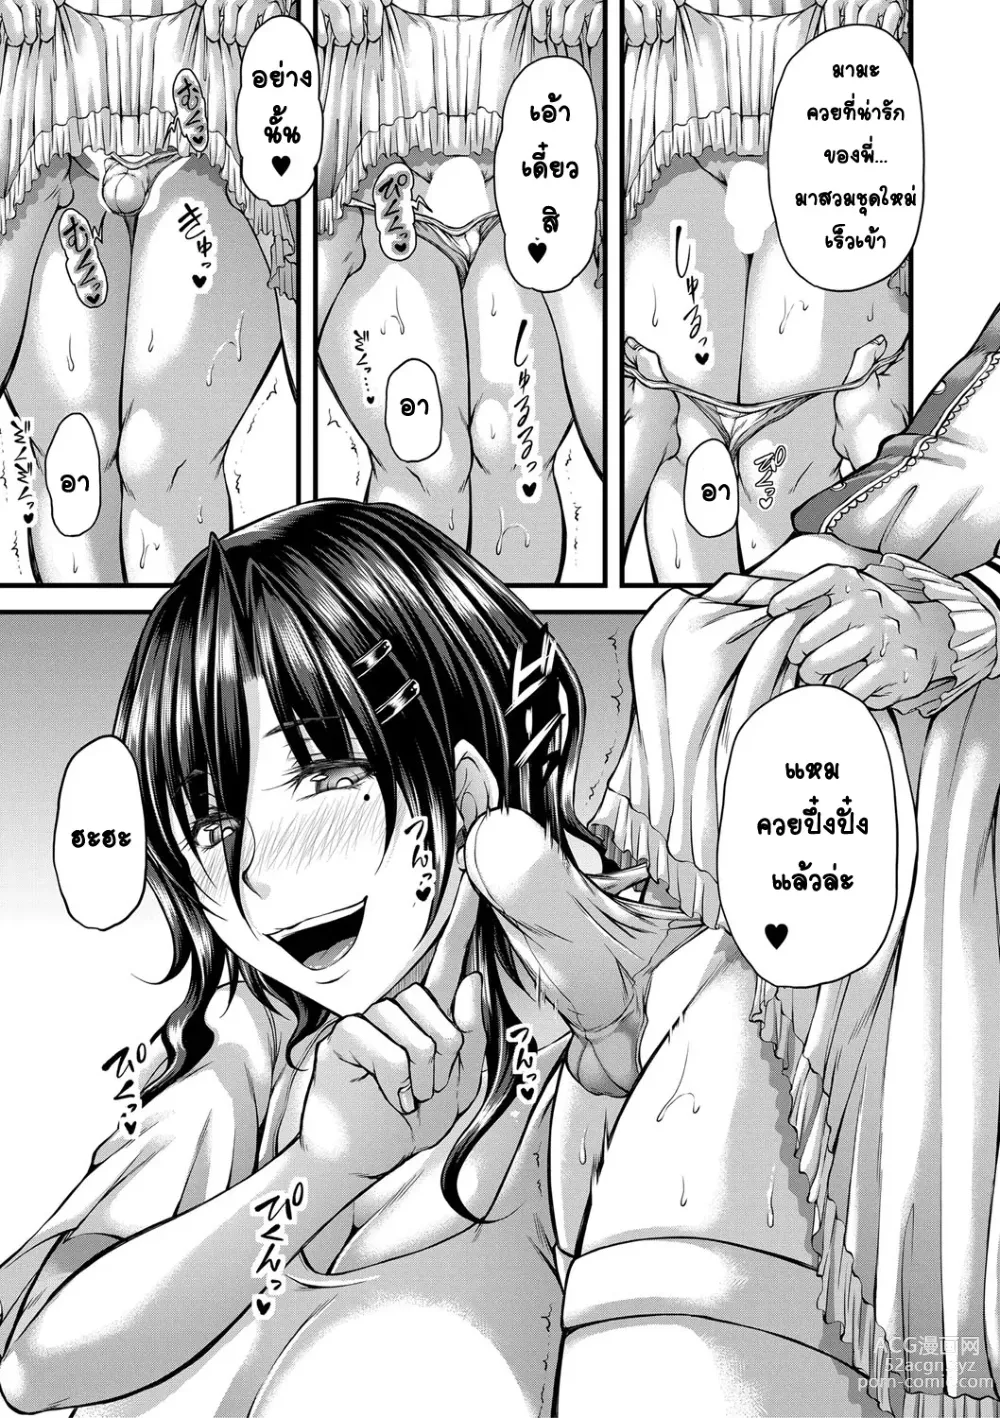 Page 9 of manga kakitsubata Kanae yoru onna ryushi wa han me rarenai 2